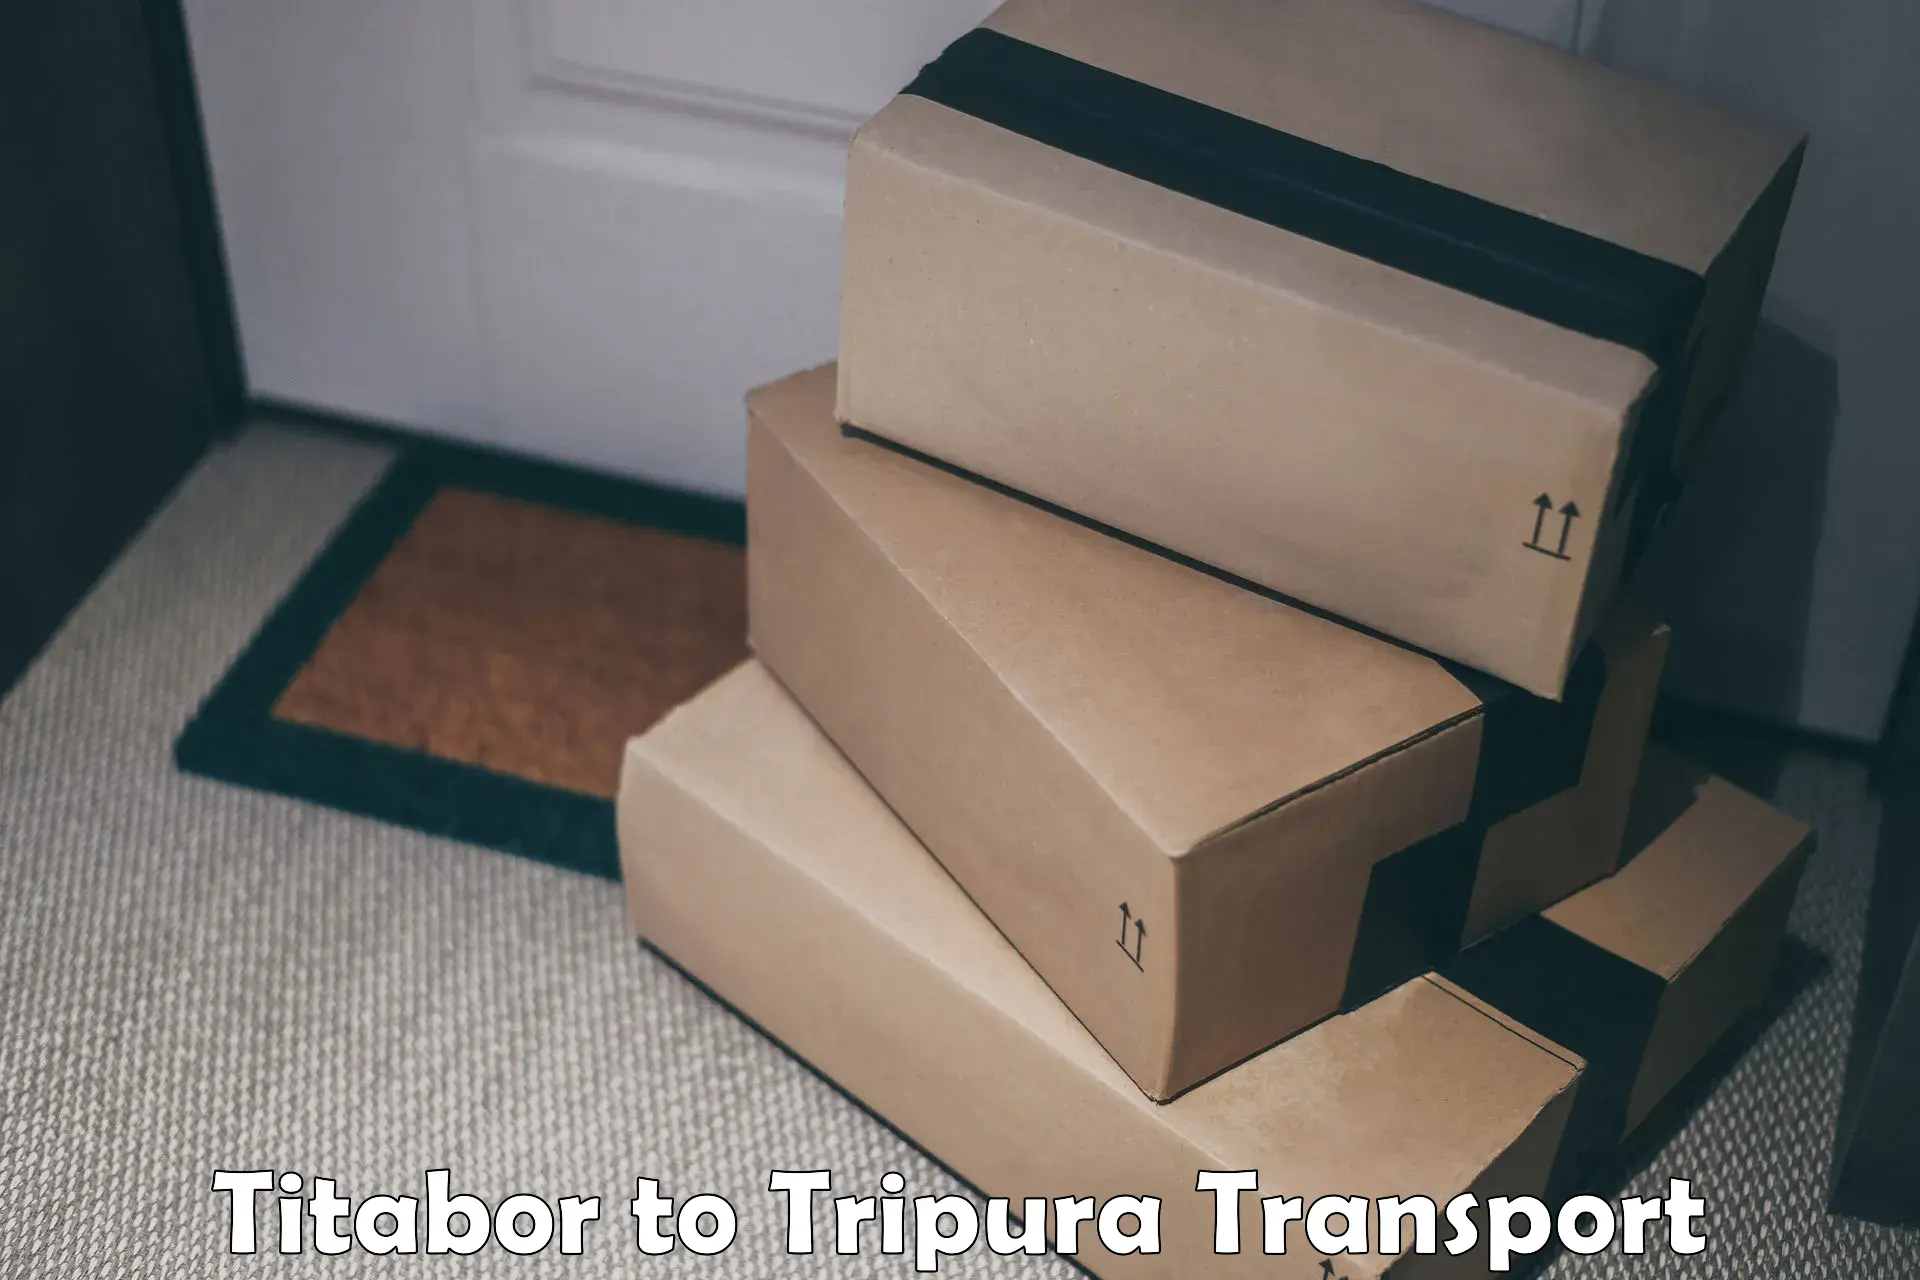 Shipping services Titabor to Santirbazar